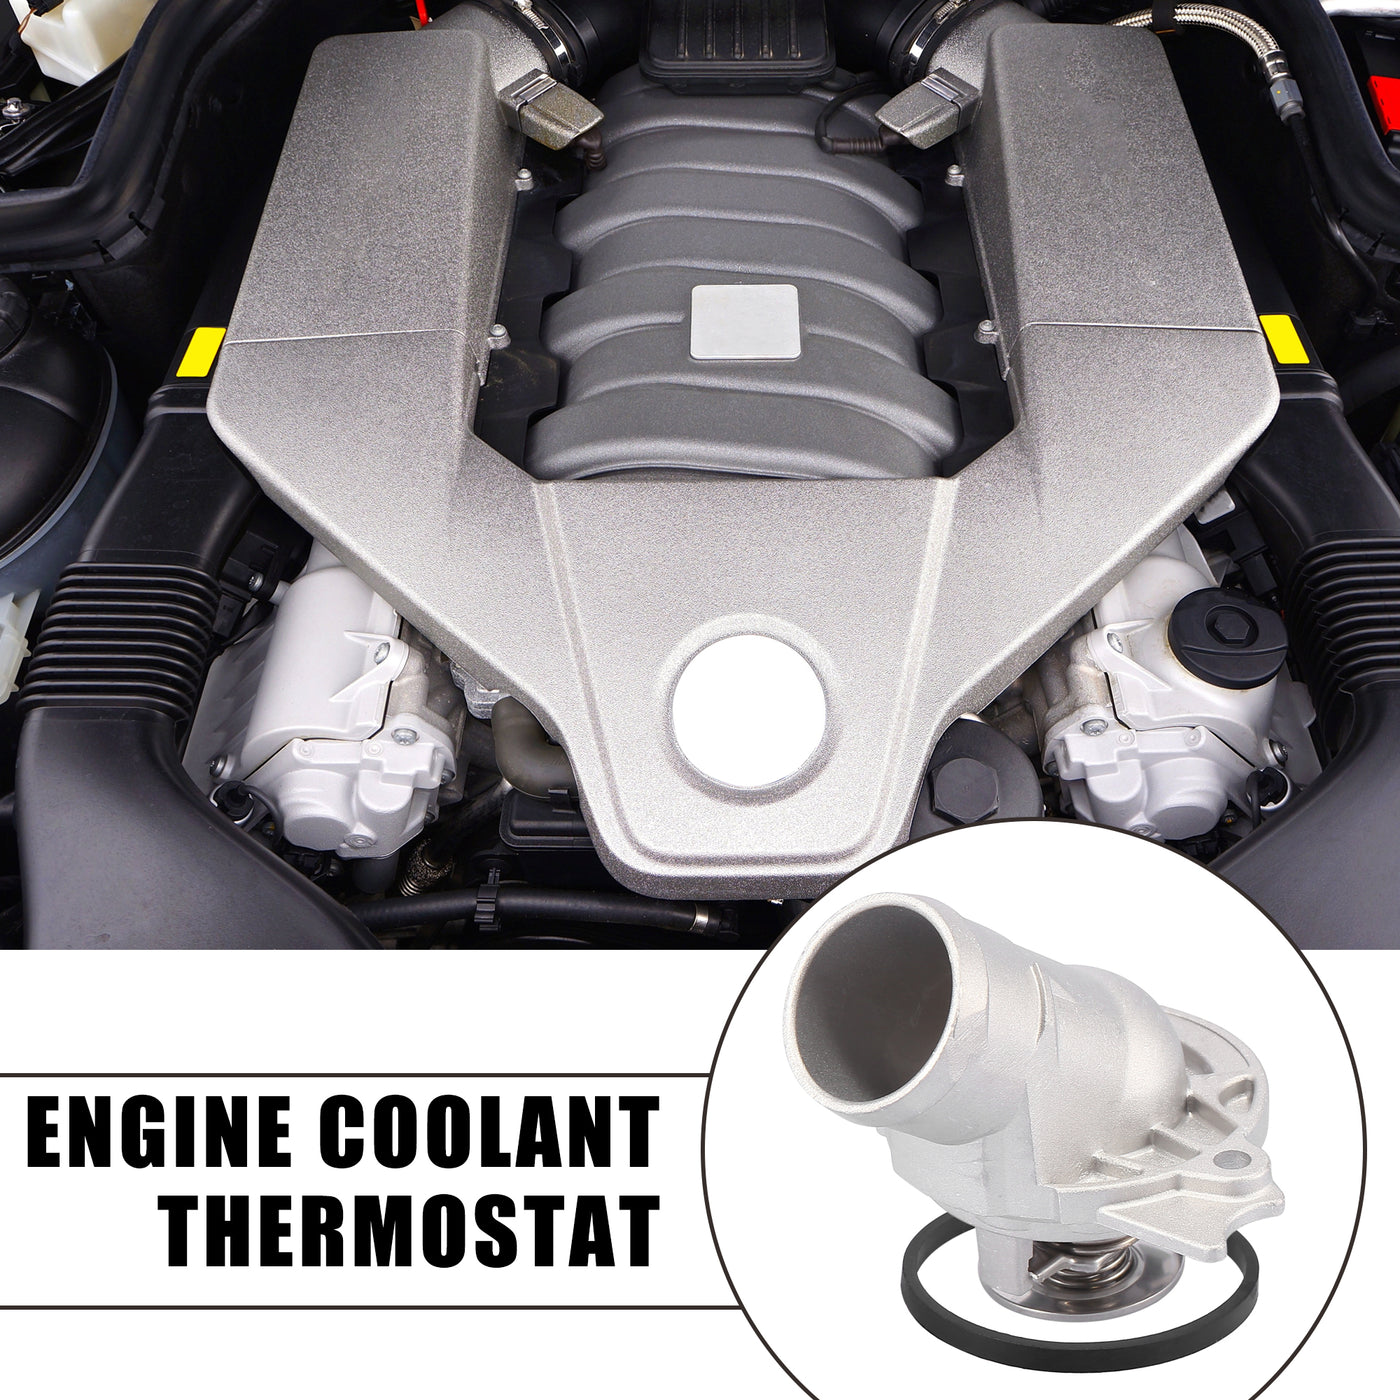 X AUTOHAUX Engine Coolant Thermostat Auto Thermostat Housing 1122030275 for Mercedes-Benz C240 C280 C320 CL500 E320 E430 E500